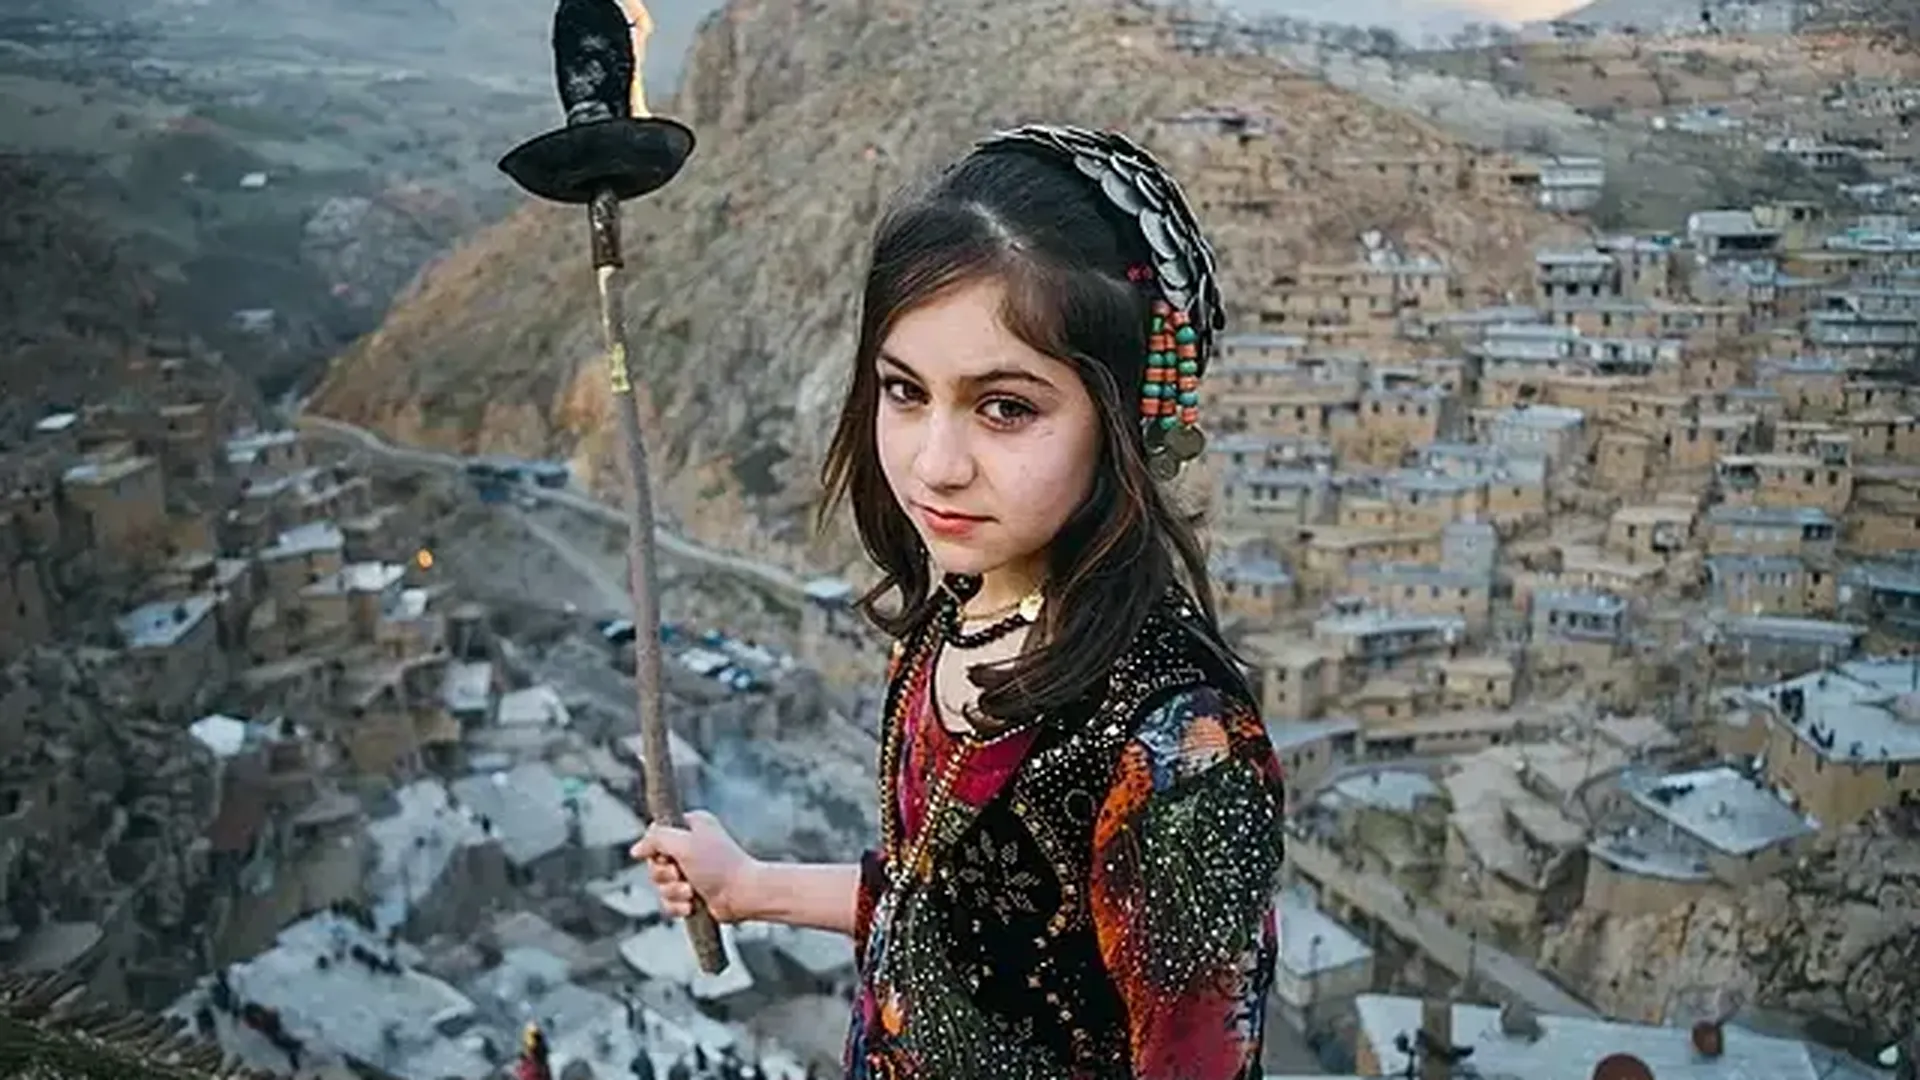 Иранская девочка во время празднования Навруза. Фото: Salar Arkan